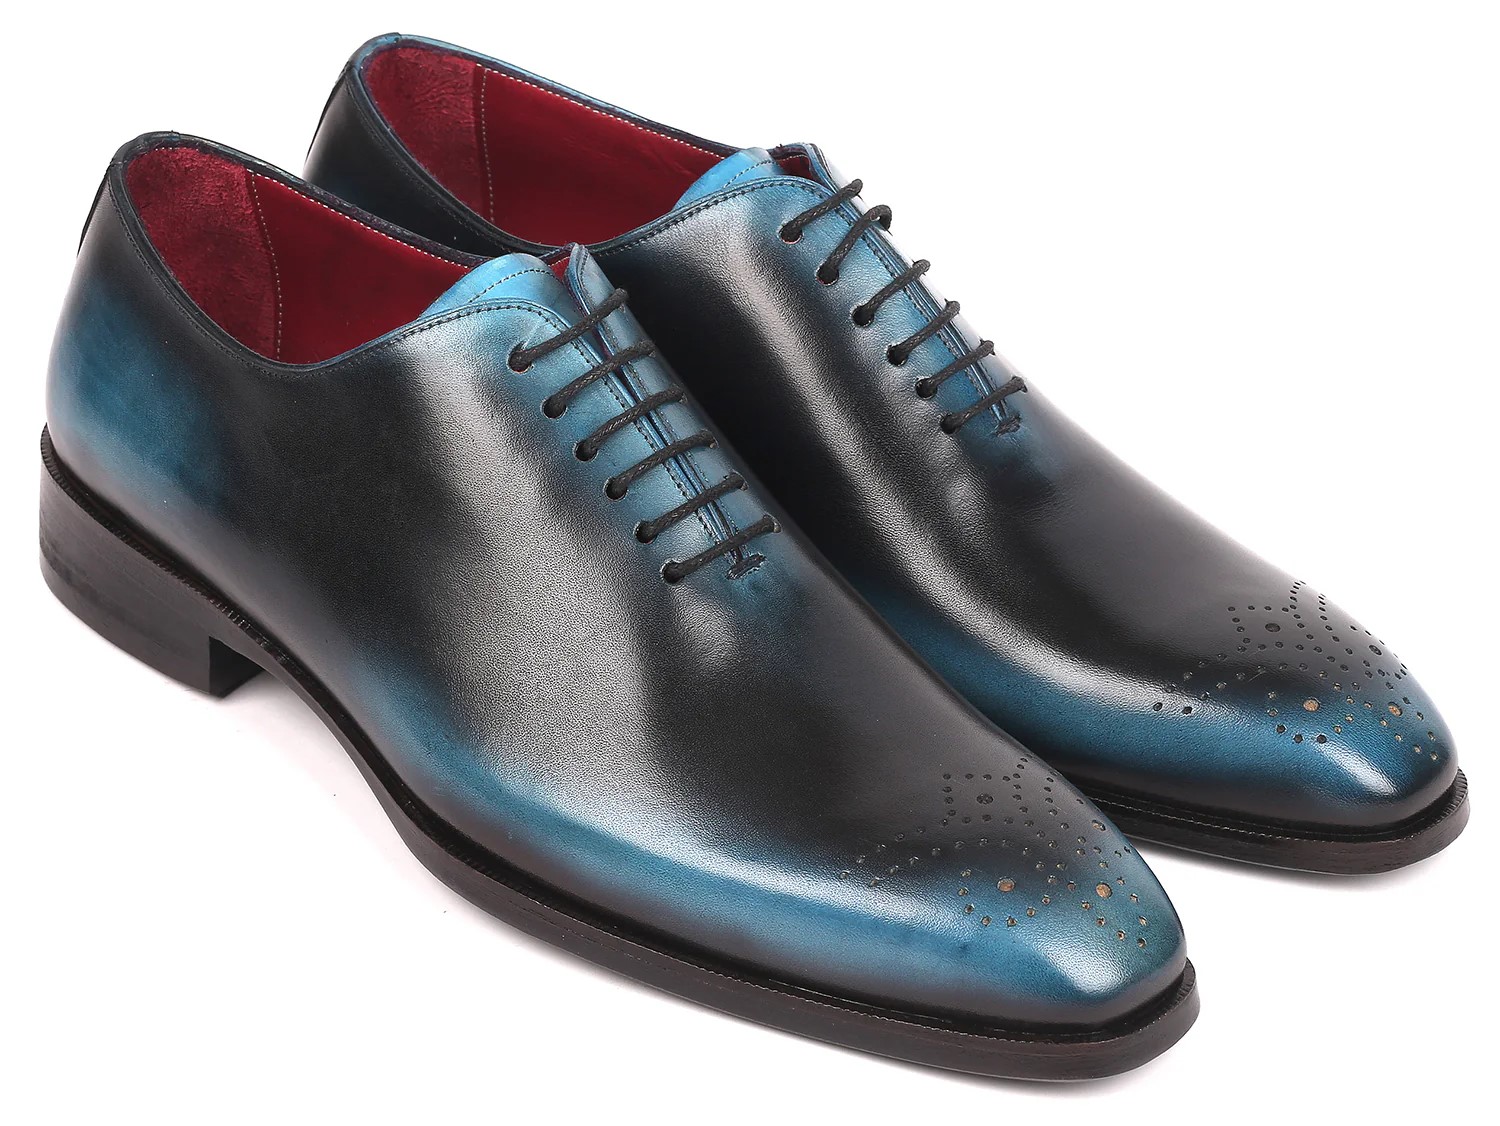 Paul Parkman Black / Blue Genuine Leather Wholecut Oxford Dress Shoes KR884BLU